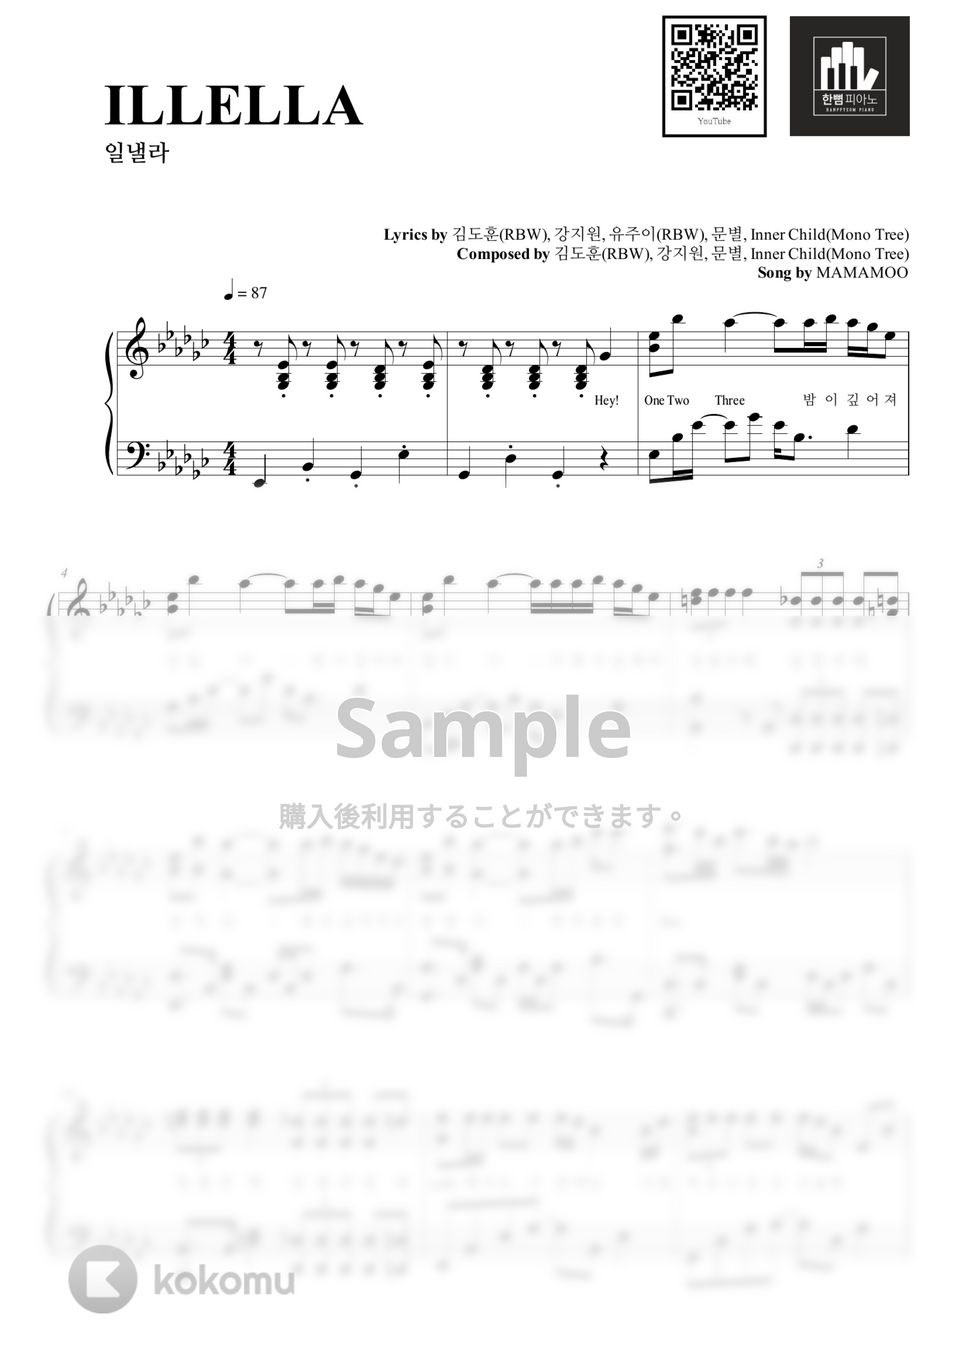 MAMAMOO - ILLELLA (PIANO COVER) by HANPPYEOMPIANO